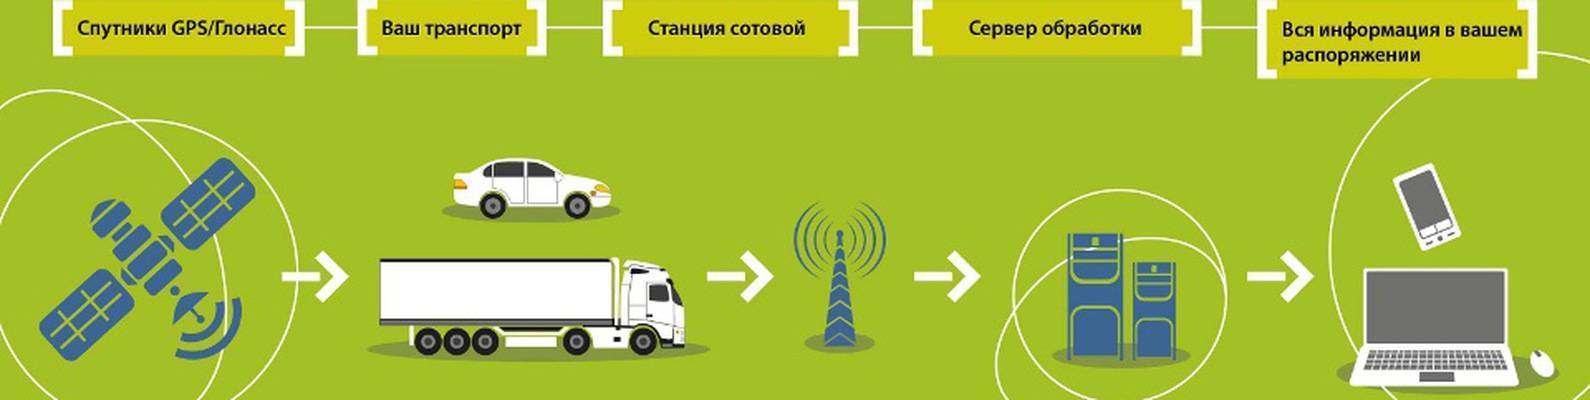 Мониторинг транспорта – как и зачем? - control engineering russia